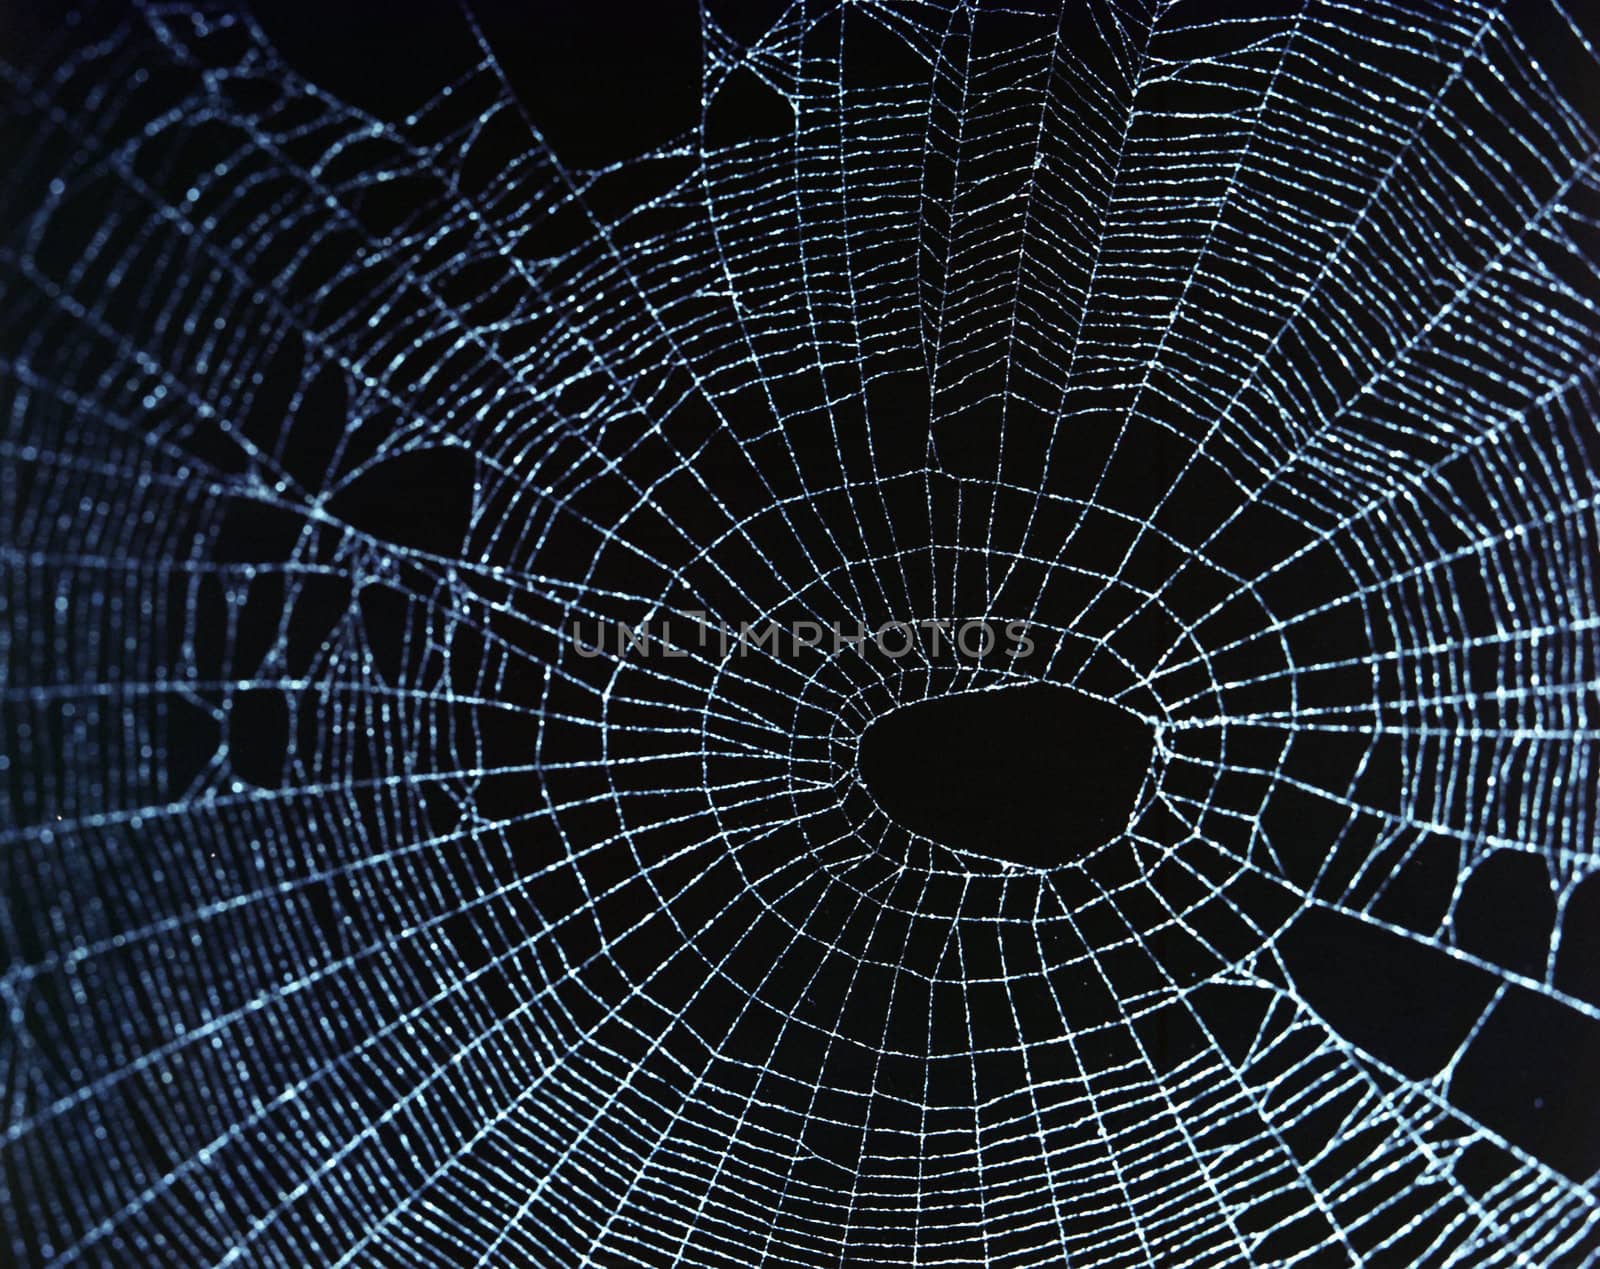 Spider web in darkness.